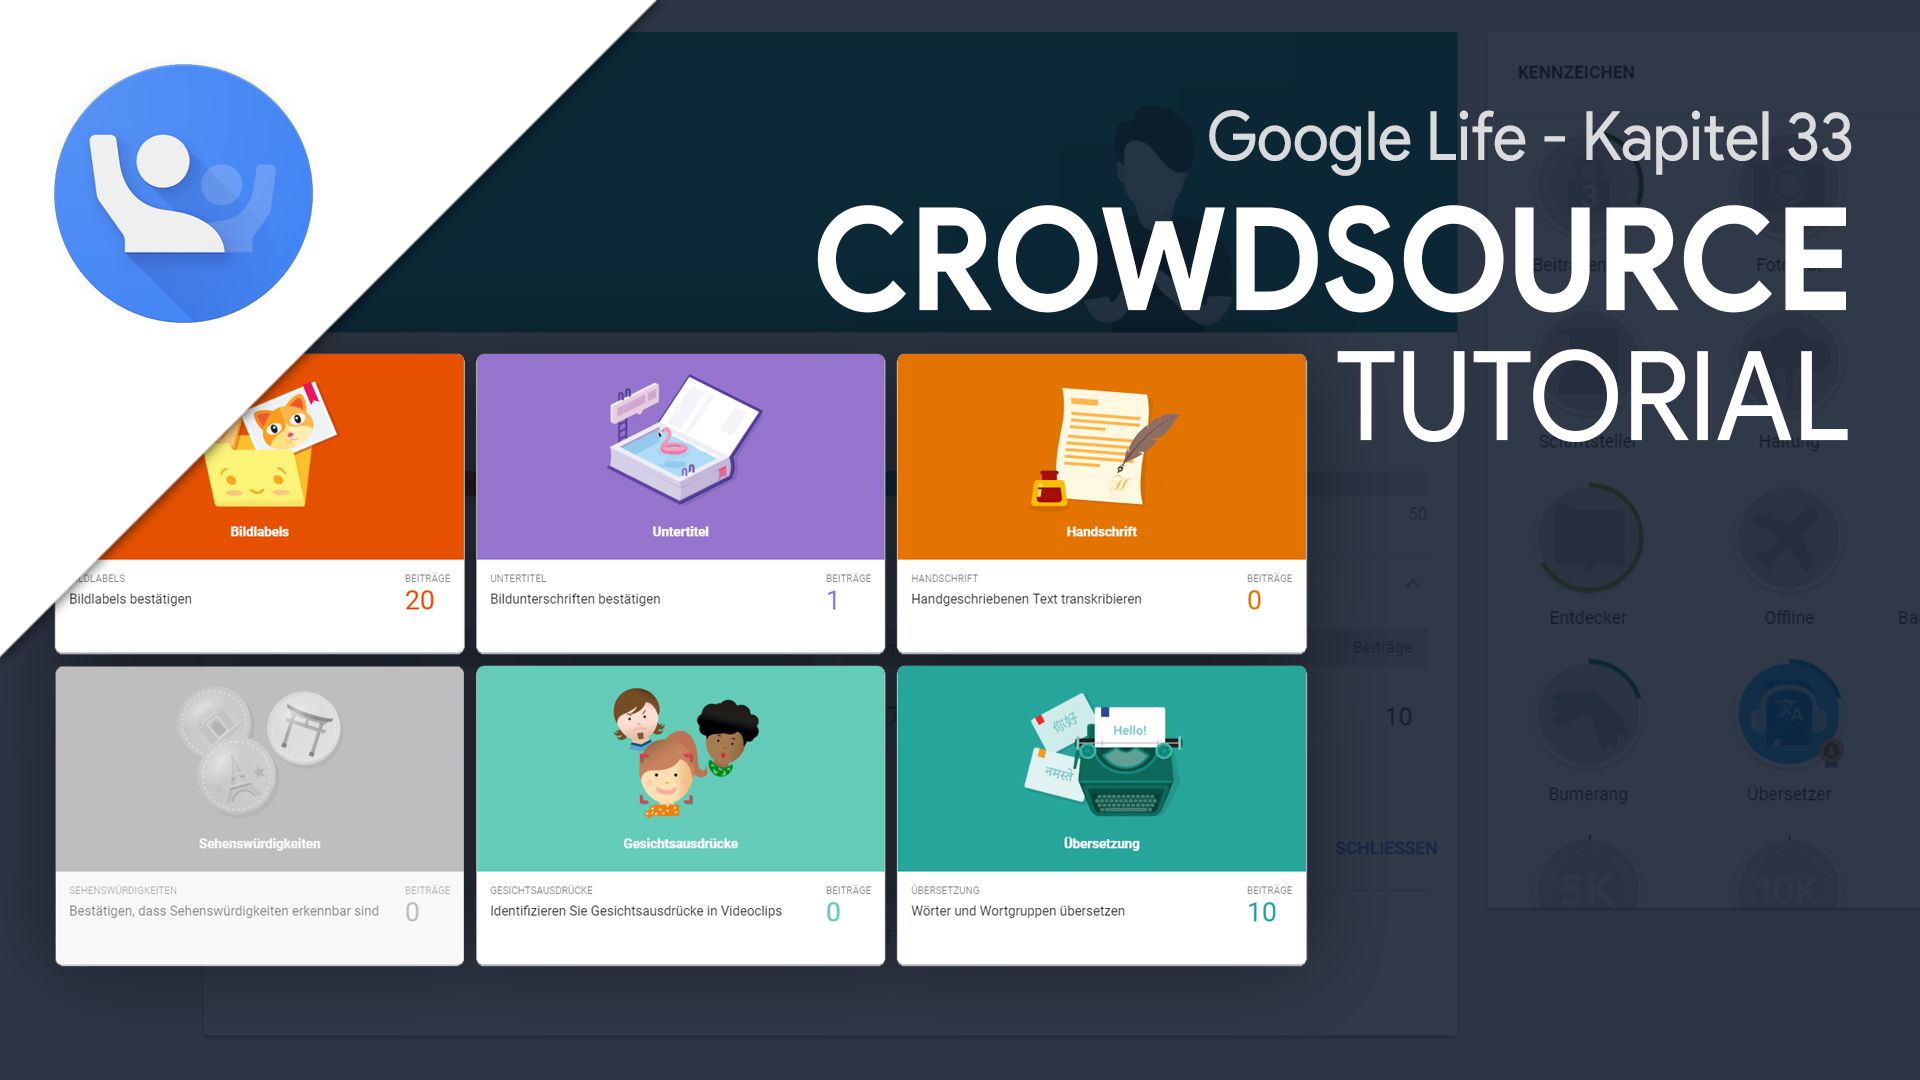 Google Crowdsource (Tutorial): Verbessere die Dienste von Google